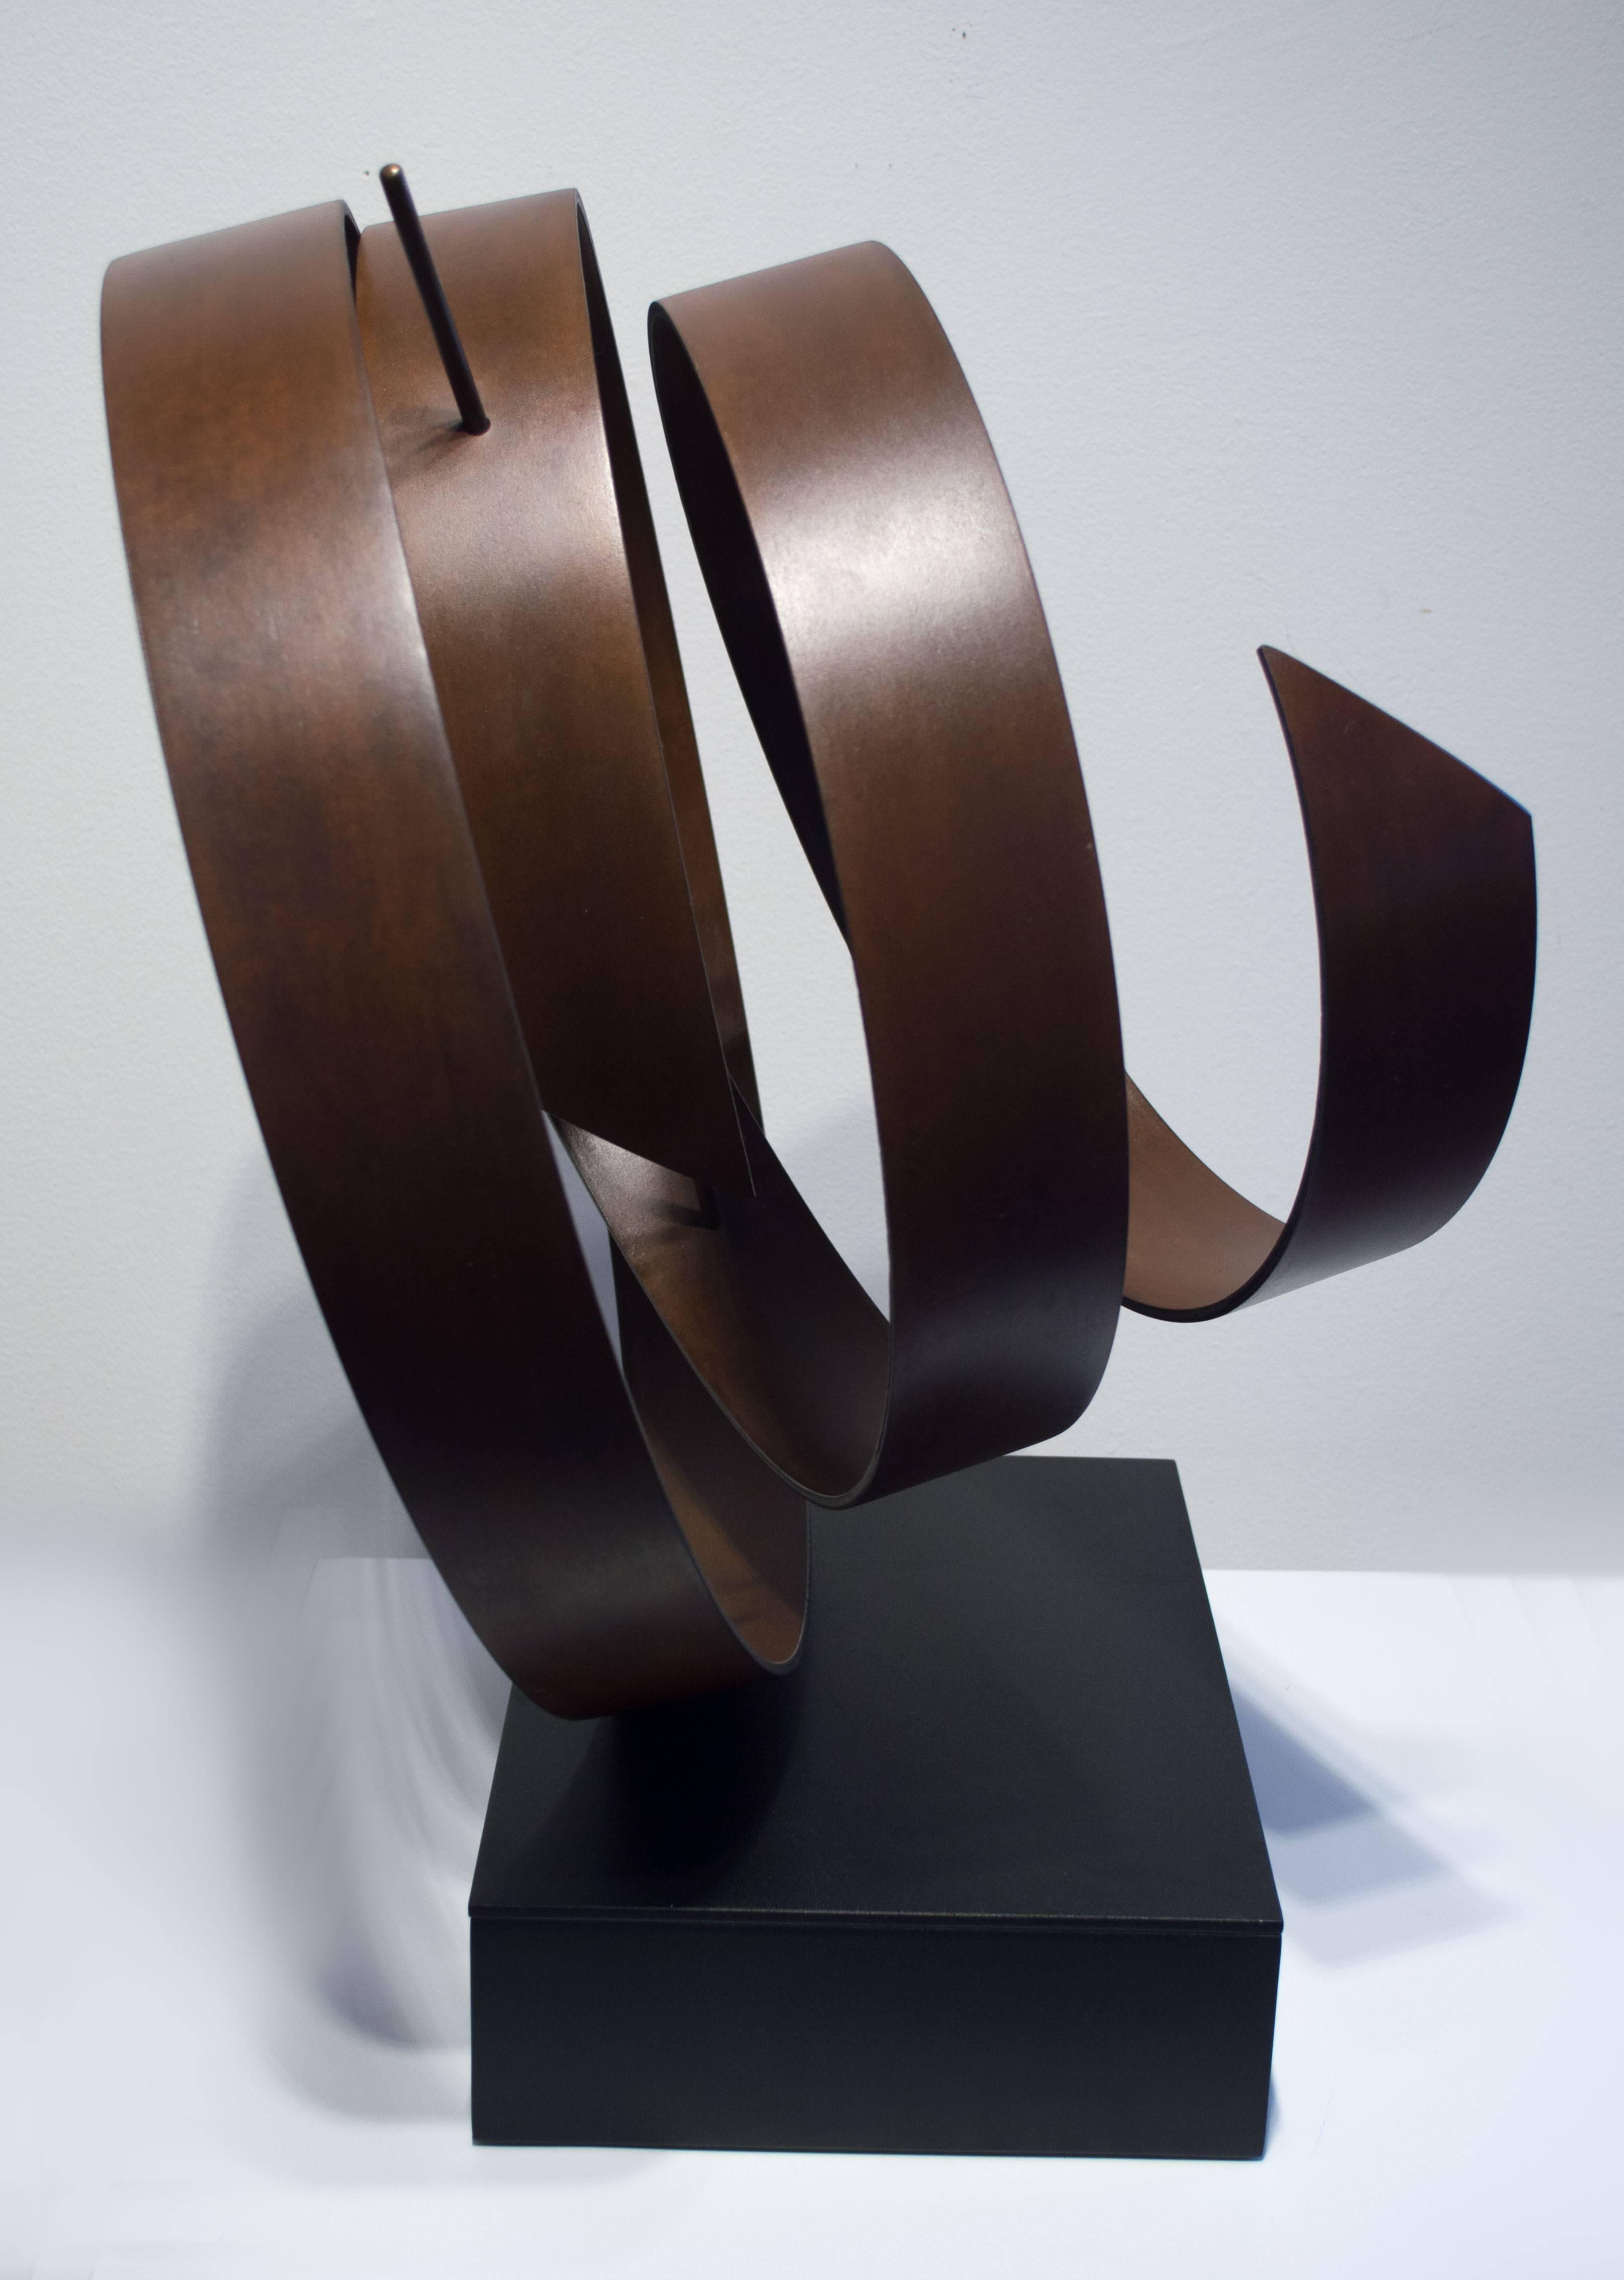 Olympiade. Handgefertigter Stahl mit Patina, Bronzestab. Einzigartig, ein Unikat.
19 x 19 x 14